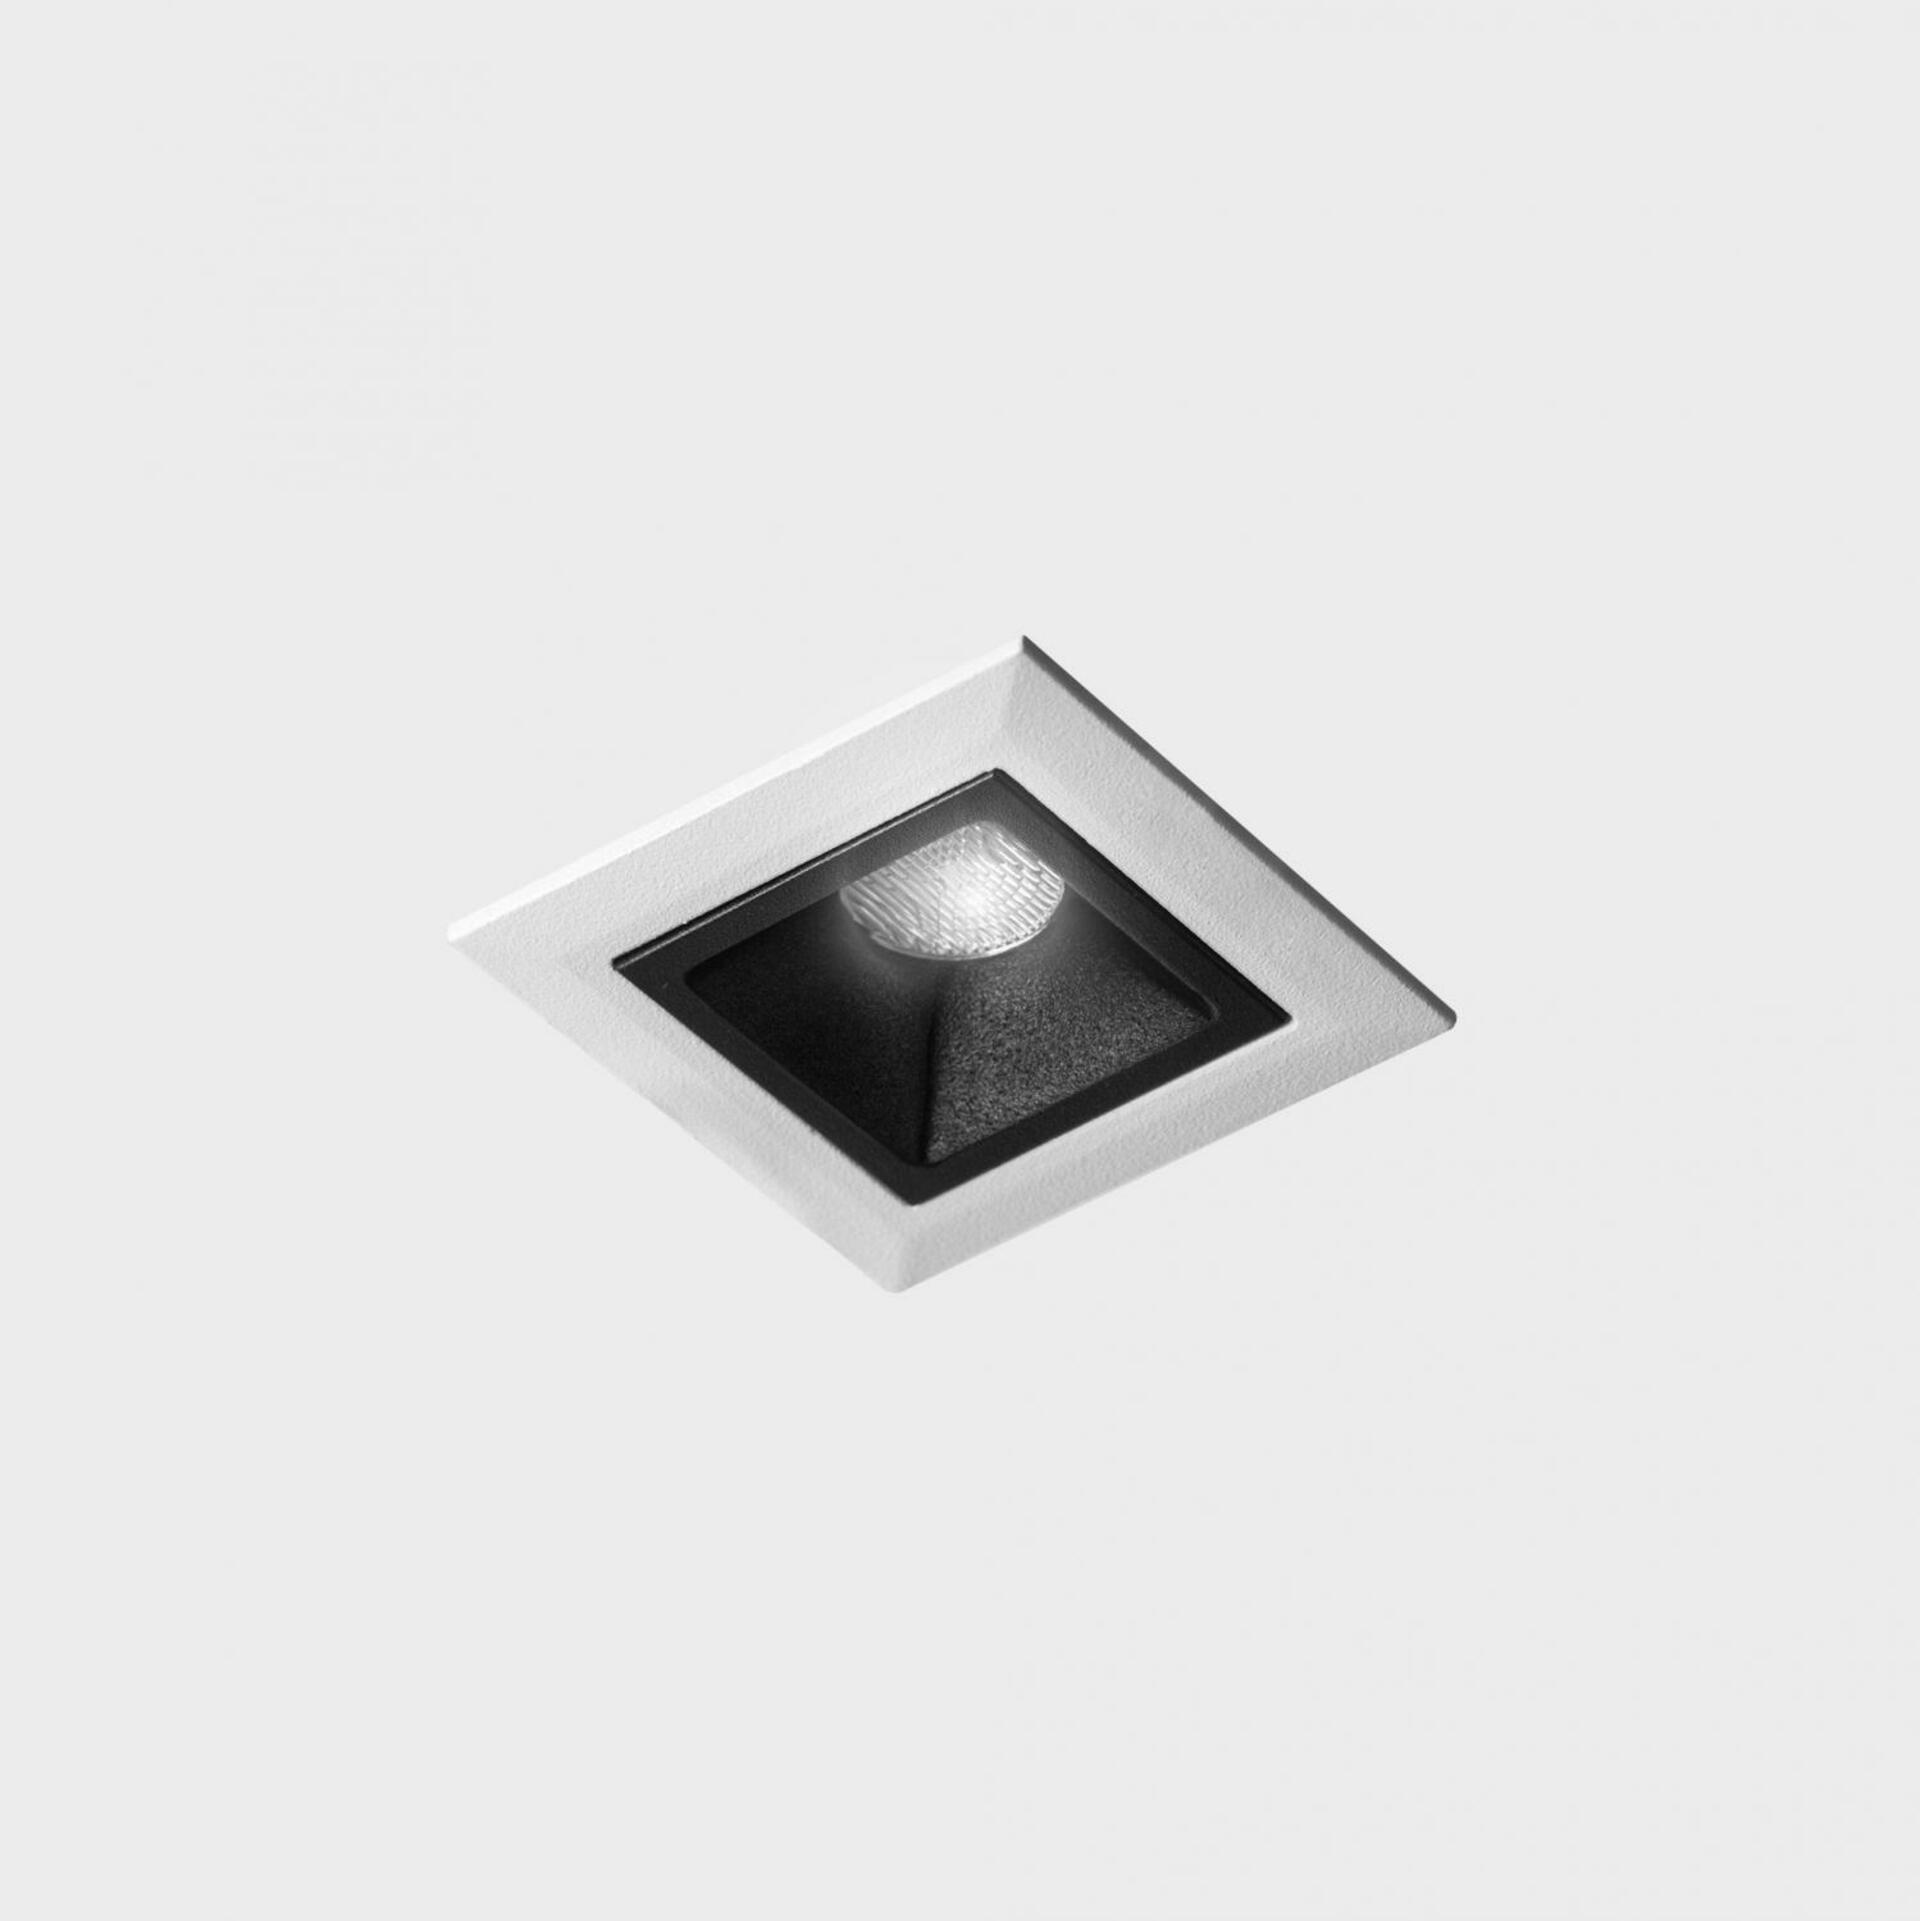 KOHL LIGHTING KOHL-Lighting NSES zapuštěné svítidlo s rámečkem 45x45 mm bílá-černá 2 W CRI 90 2700K DALI